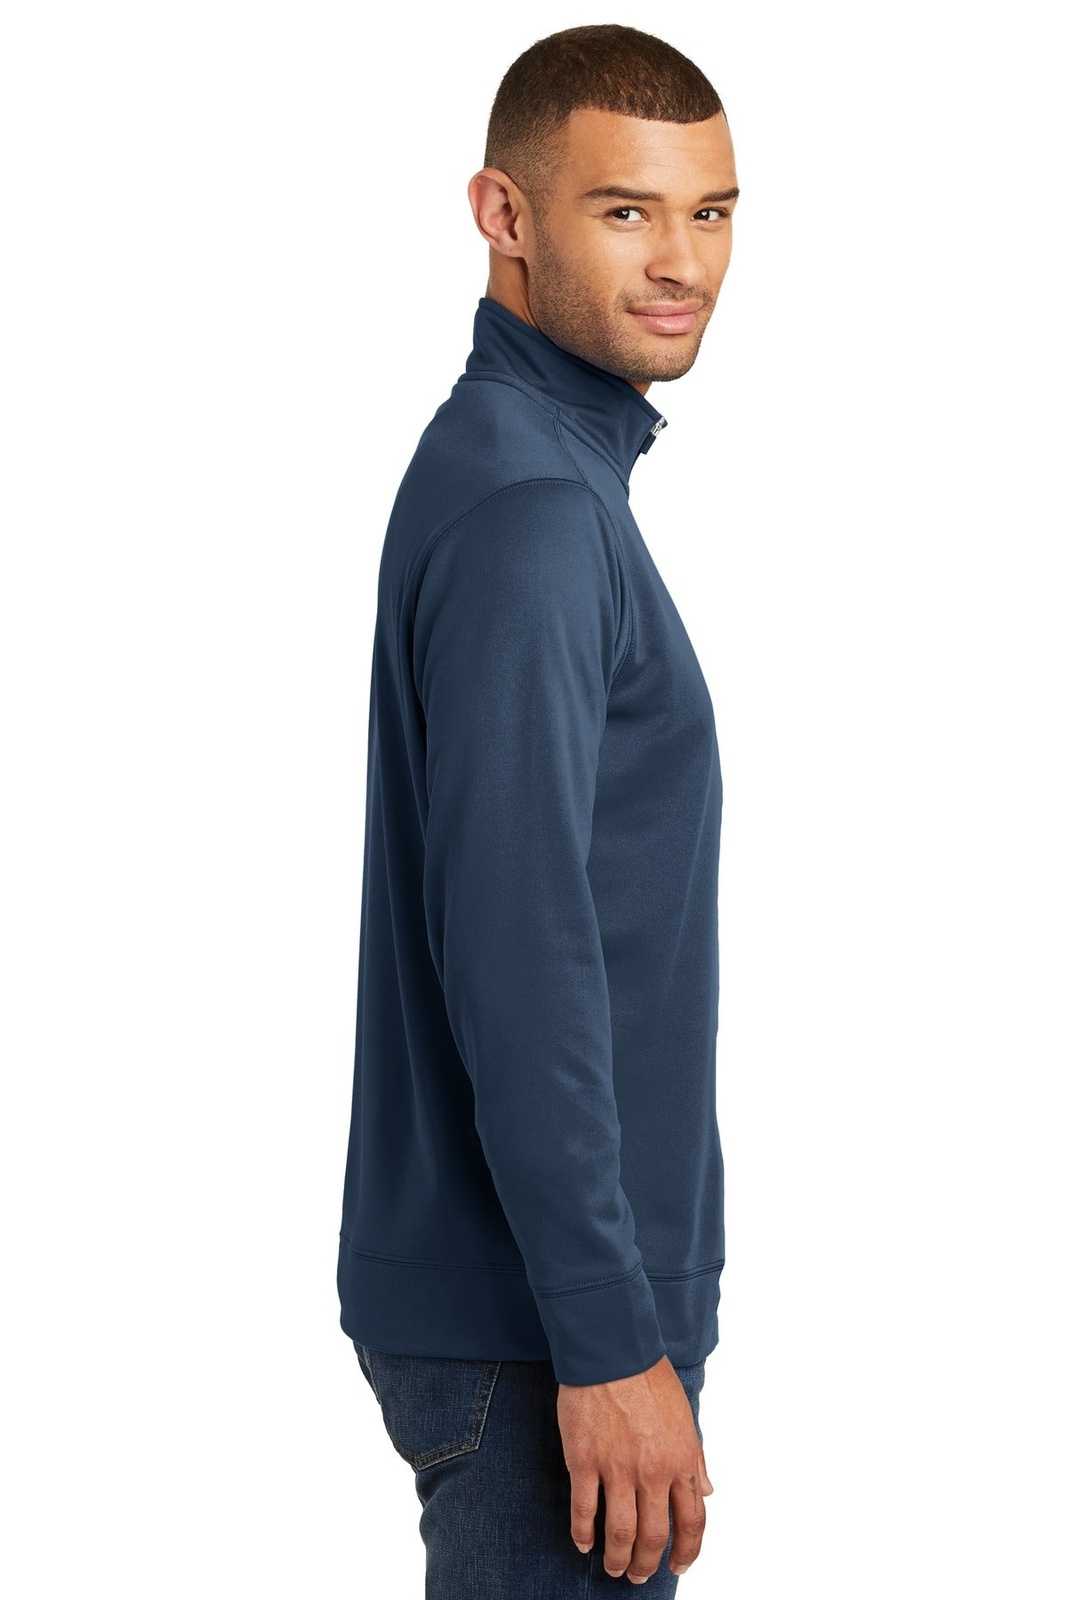 Port &amp; Company PC590Q Fleece 1/4-Zip Pullover Sweatshirt - Deep Navy - HIT a Double - 3